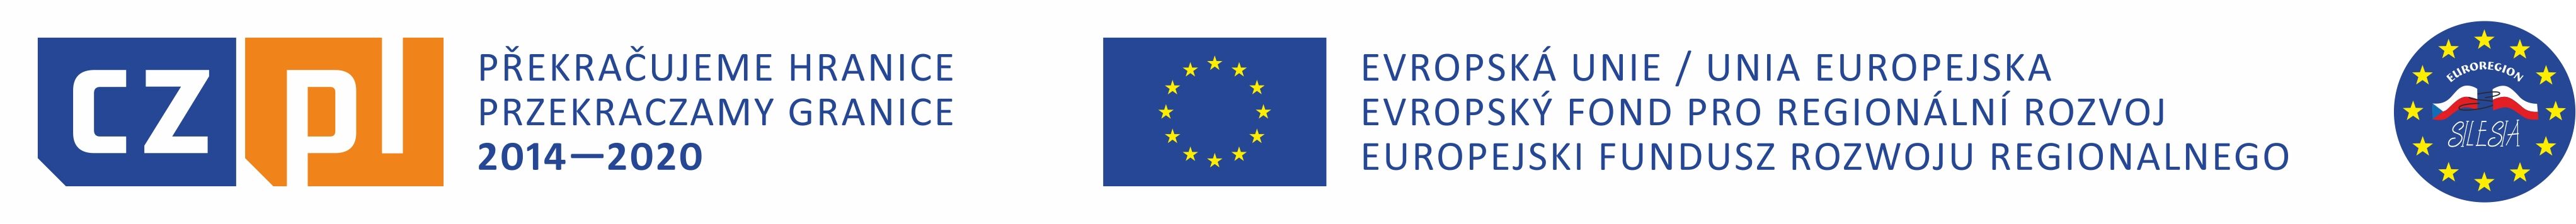 Na zdjęciu znajdują się trzy loga symbolizujące wsparcie finansowe z Unii Europejskiej. Każde logo zawiera flagę UE oraz informacje o funduszu i okresie finansowania.